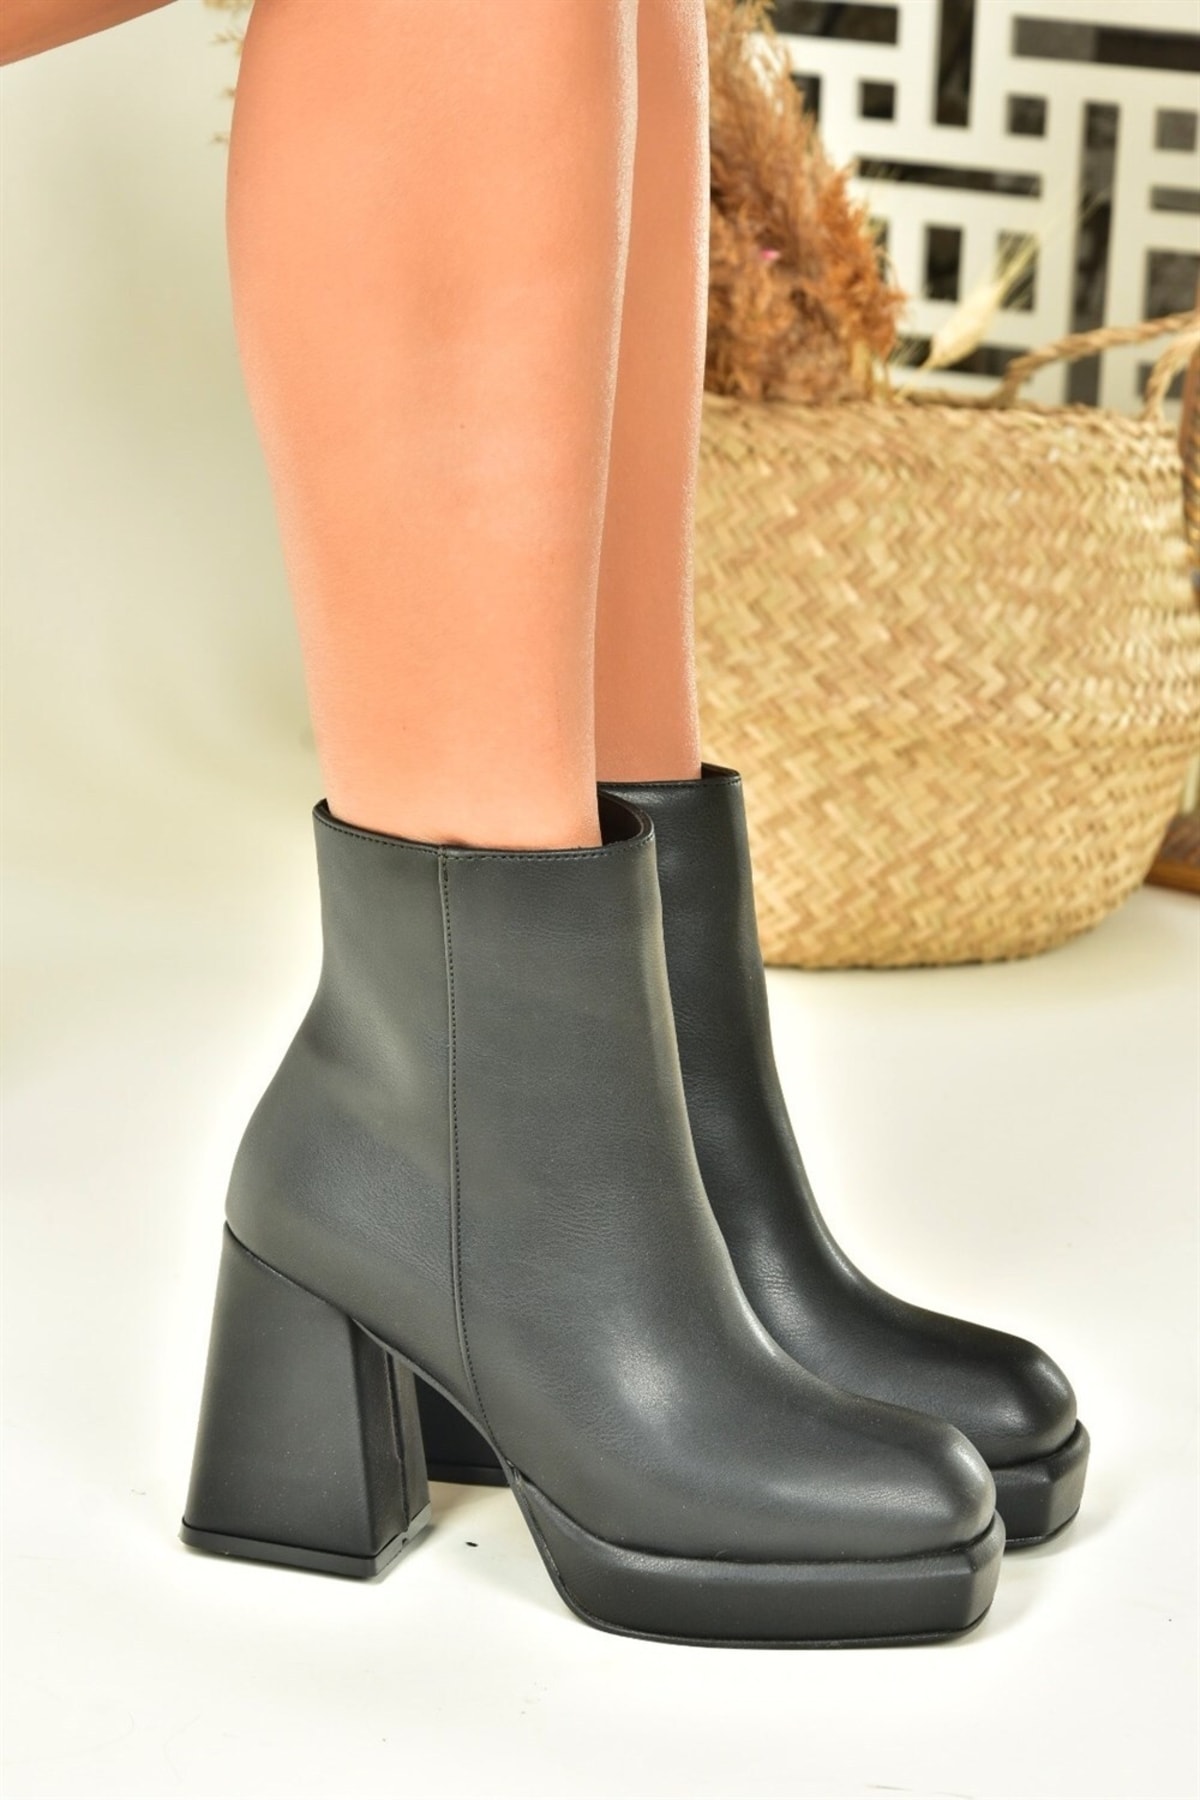 Fox Shoes Black Platform Sole Women's Boots